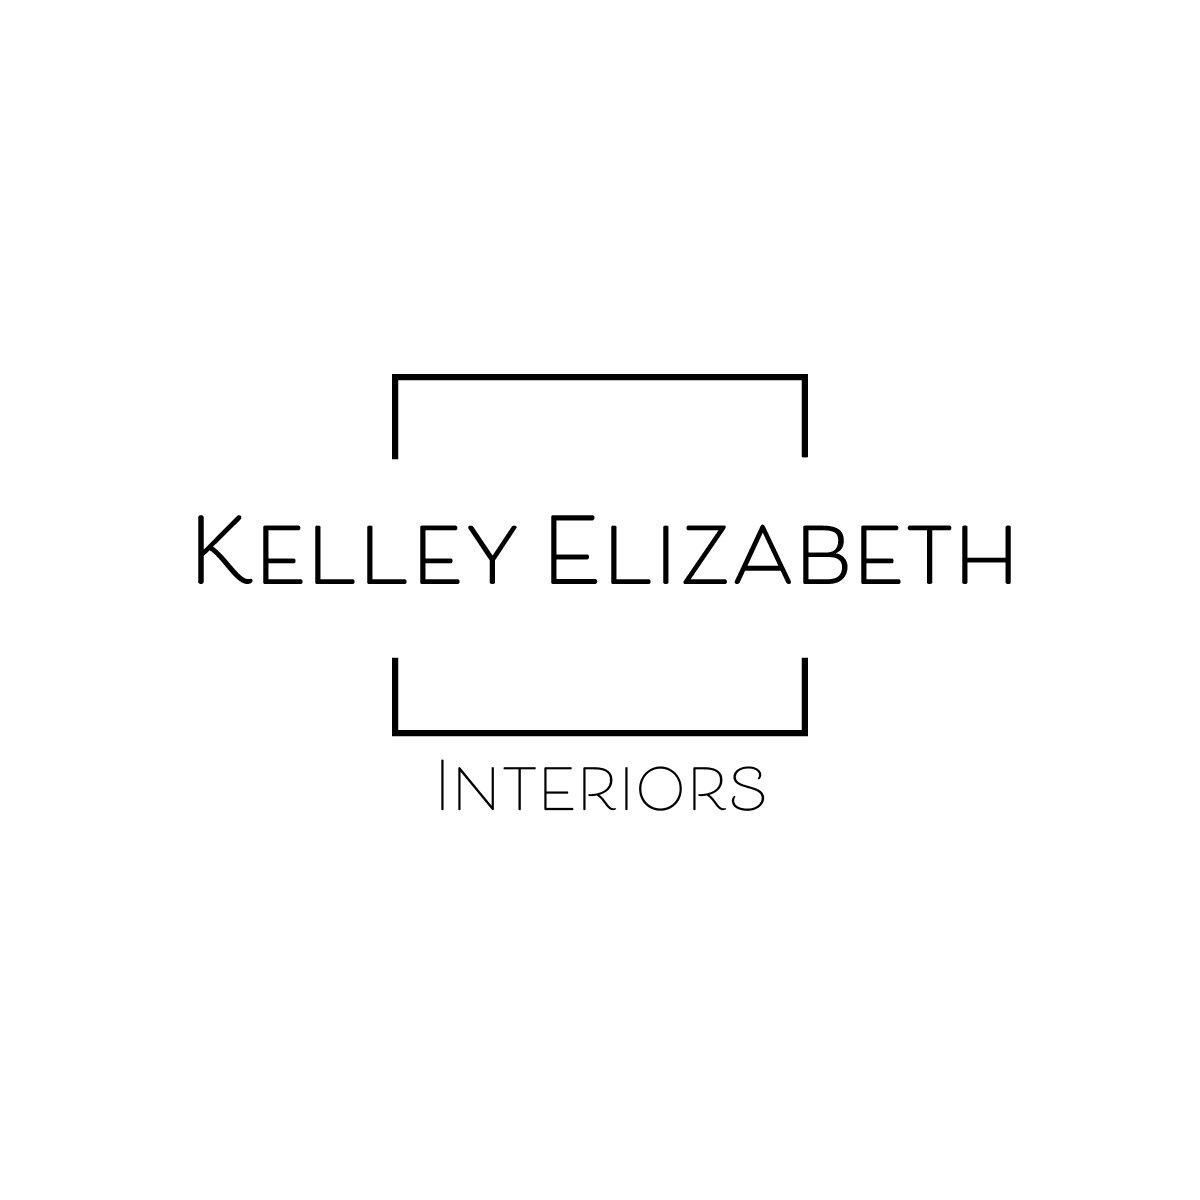 Kelley Elizabeth Interiors